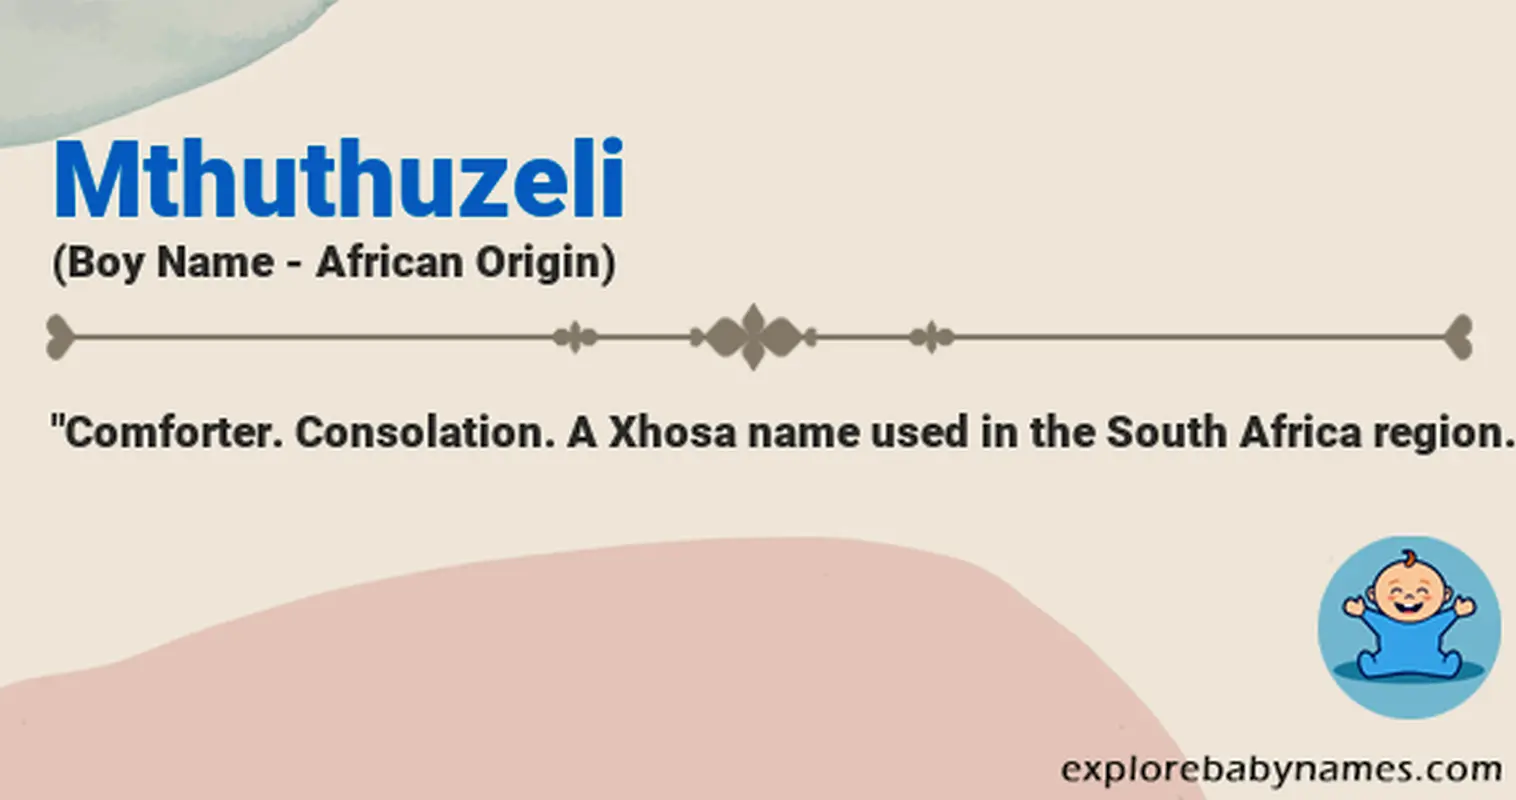 Meaning of Mthuthuzeli